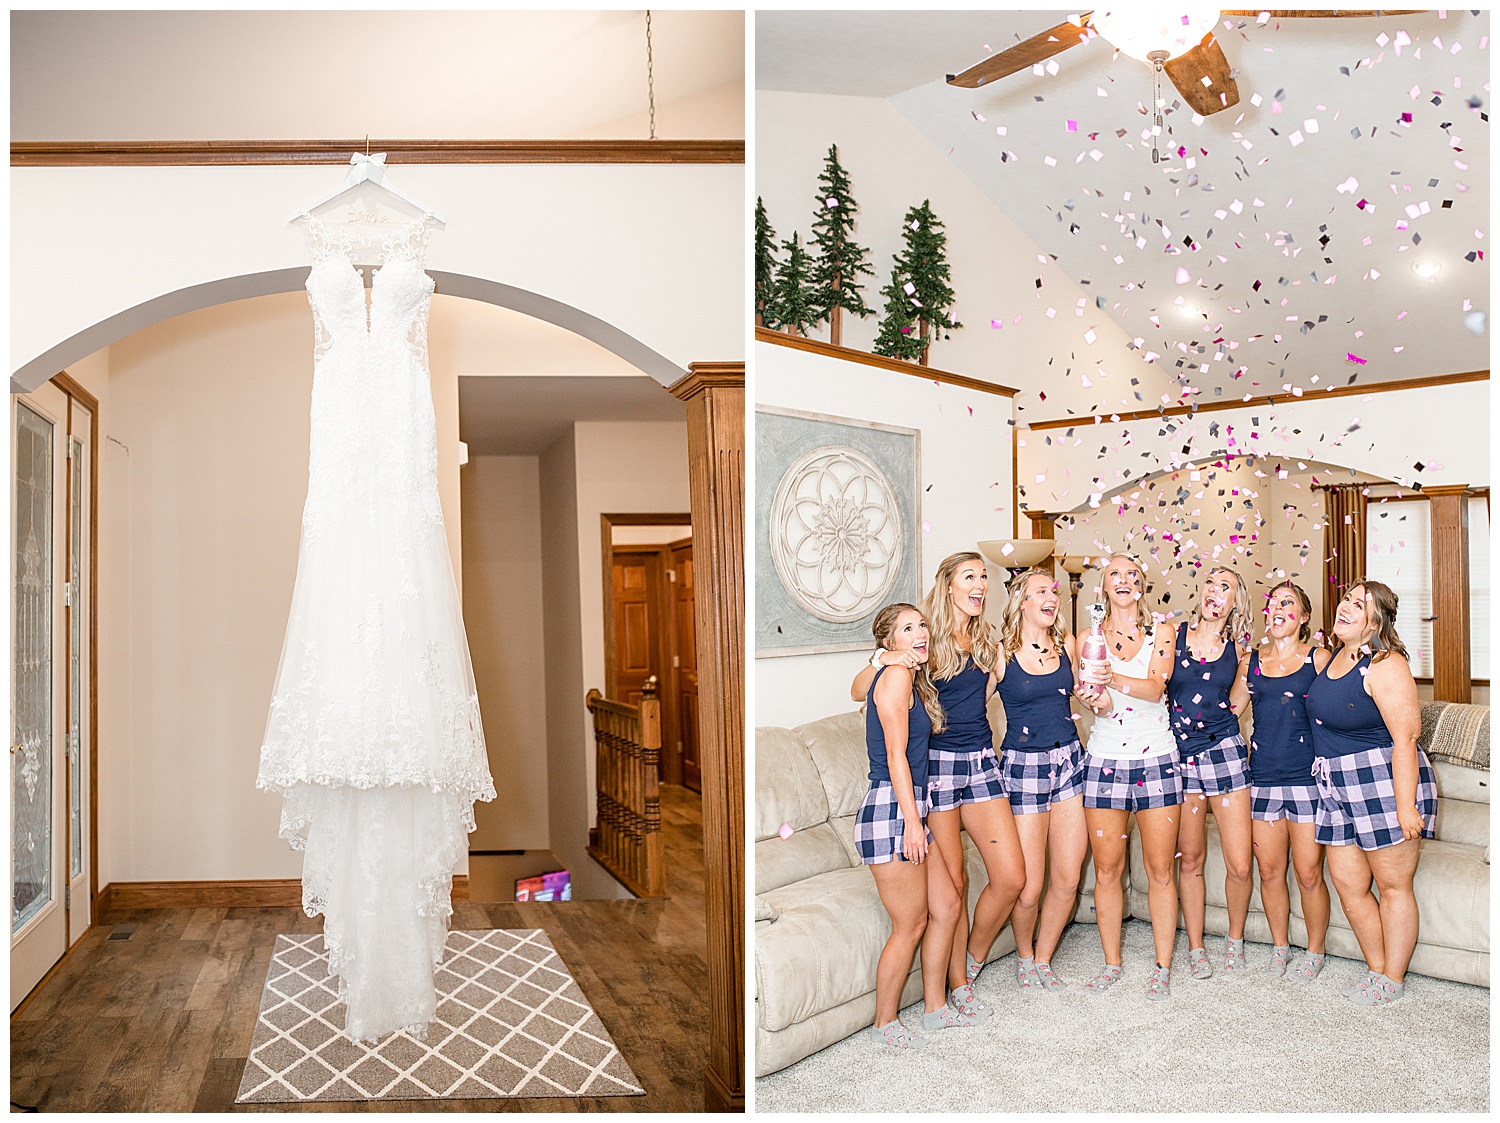 Getting Ready - Popping Confetti - Wedding Dress